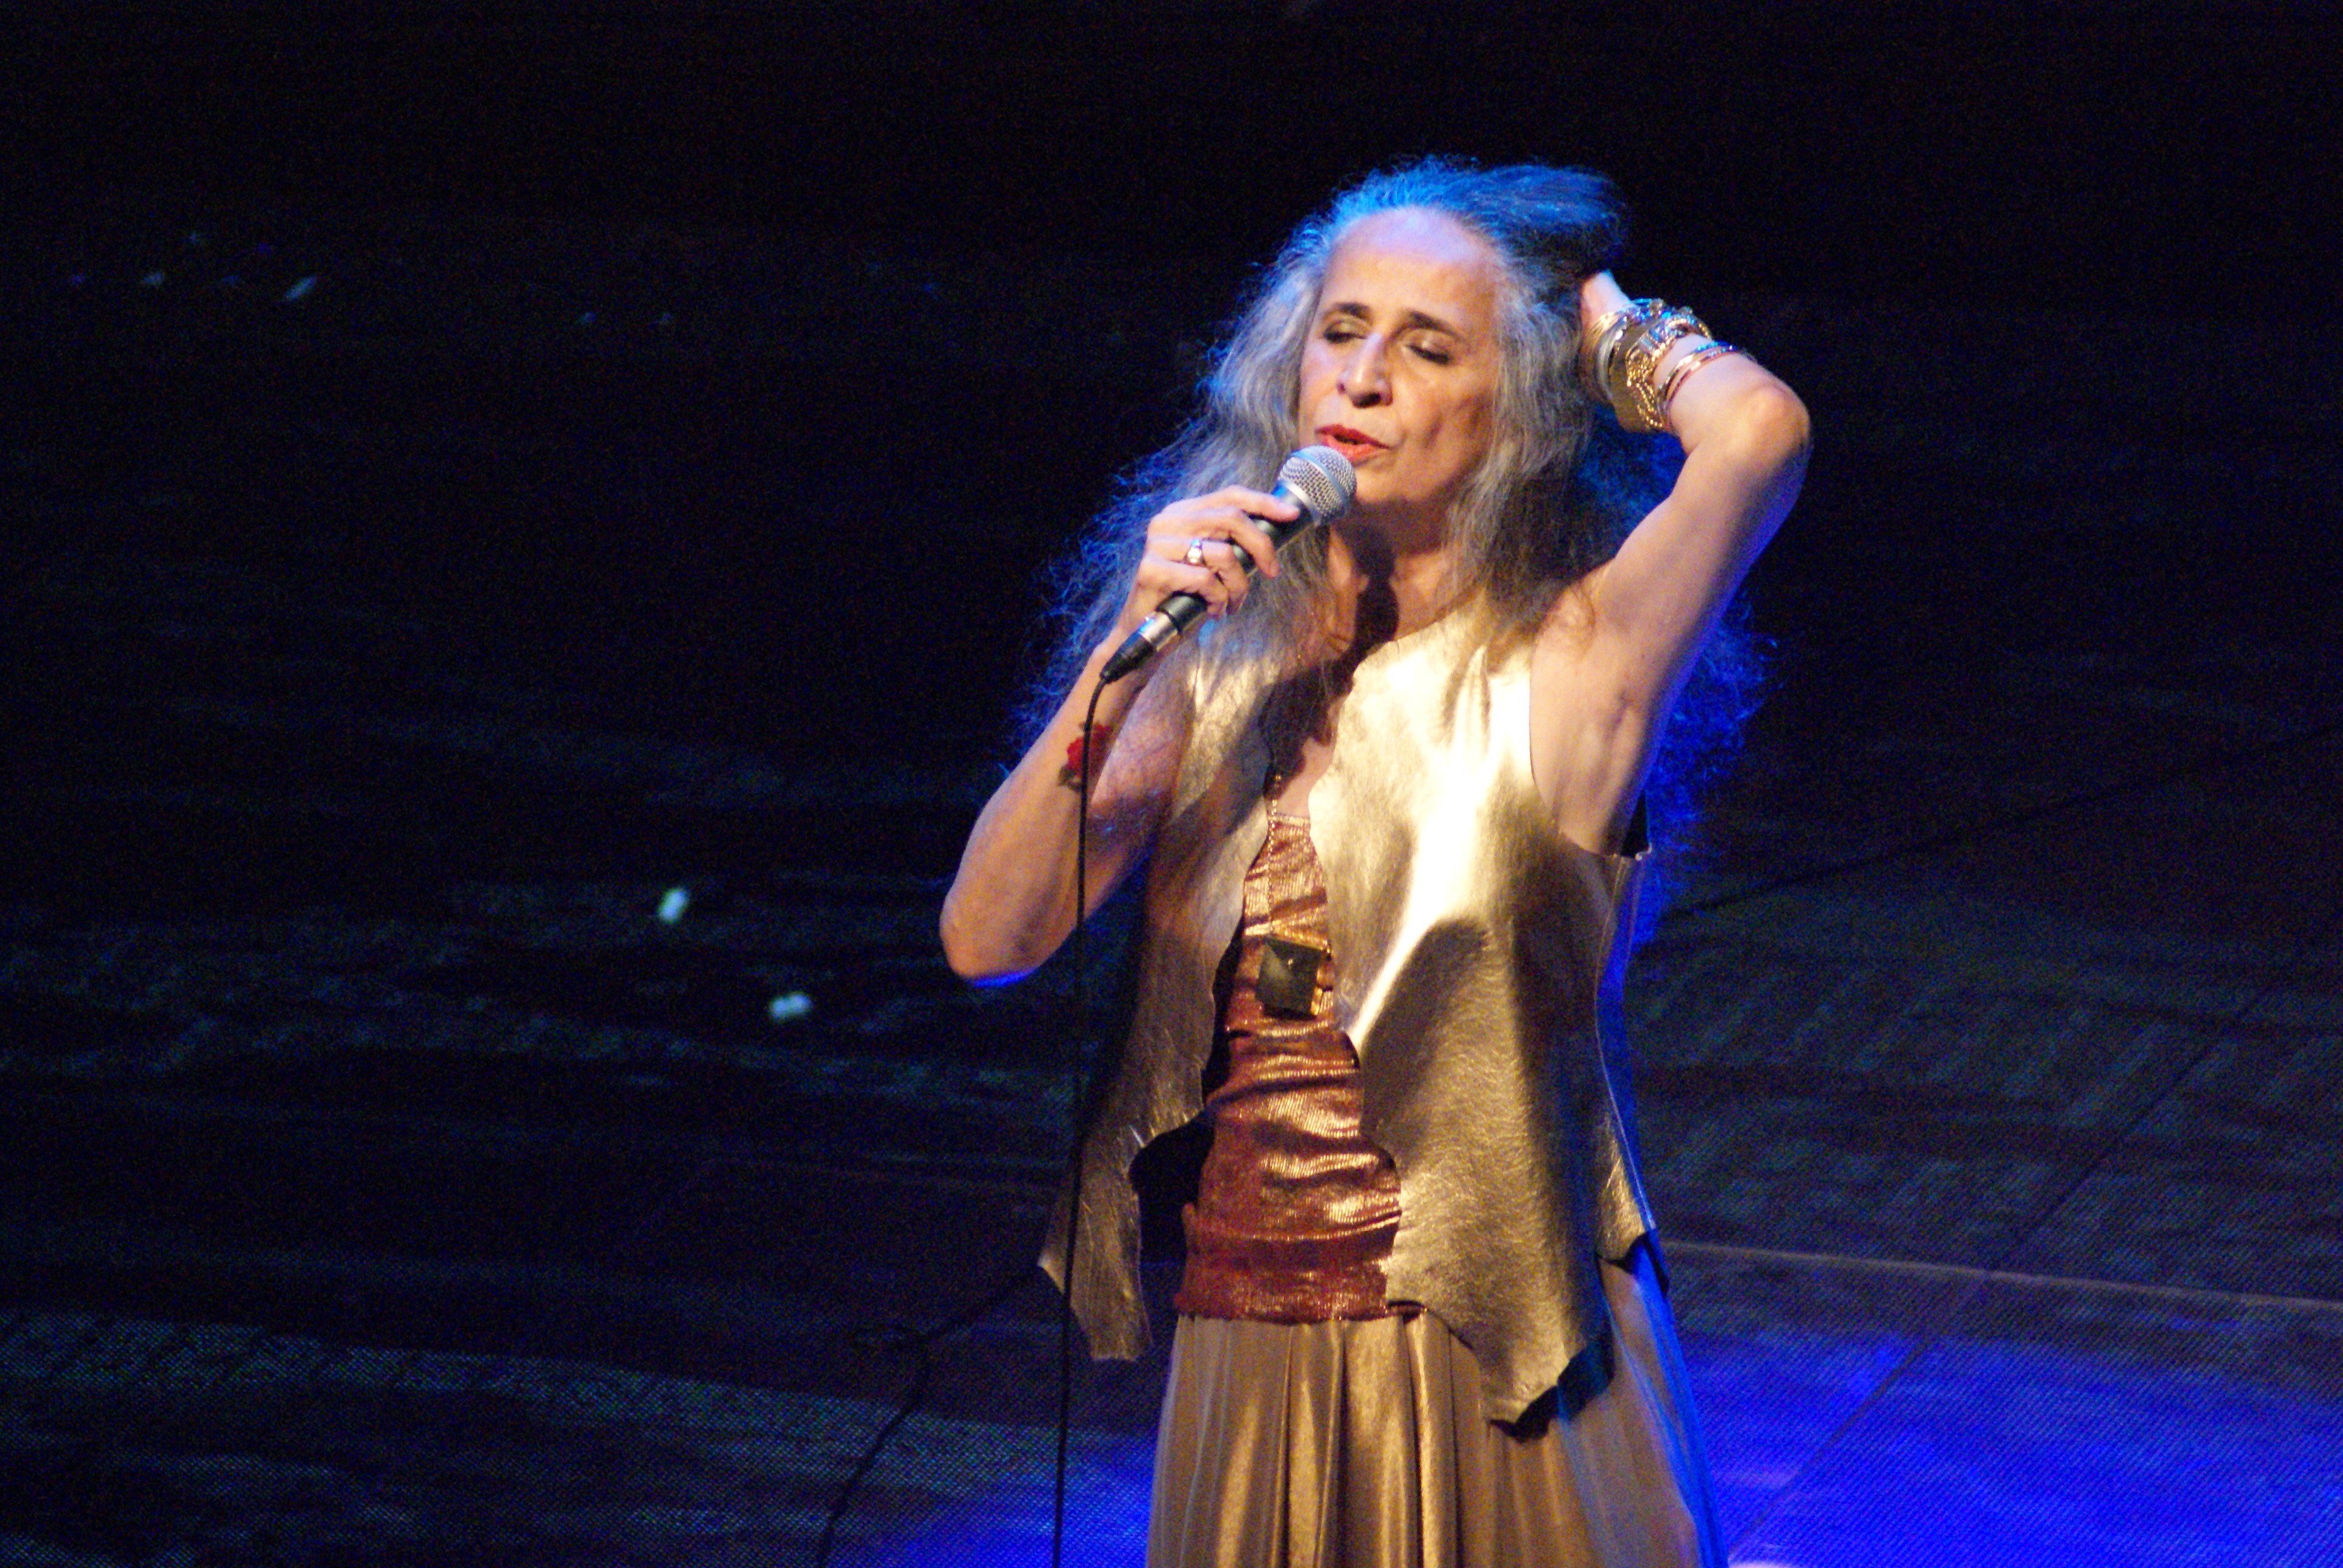 Maria Bethânia no palco cantando